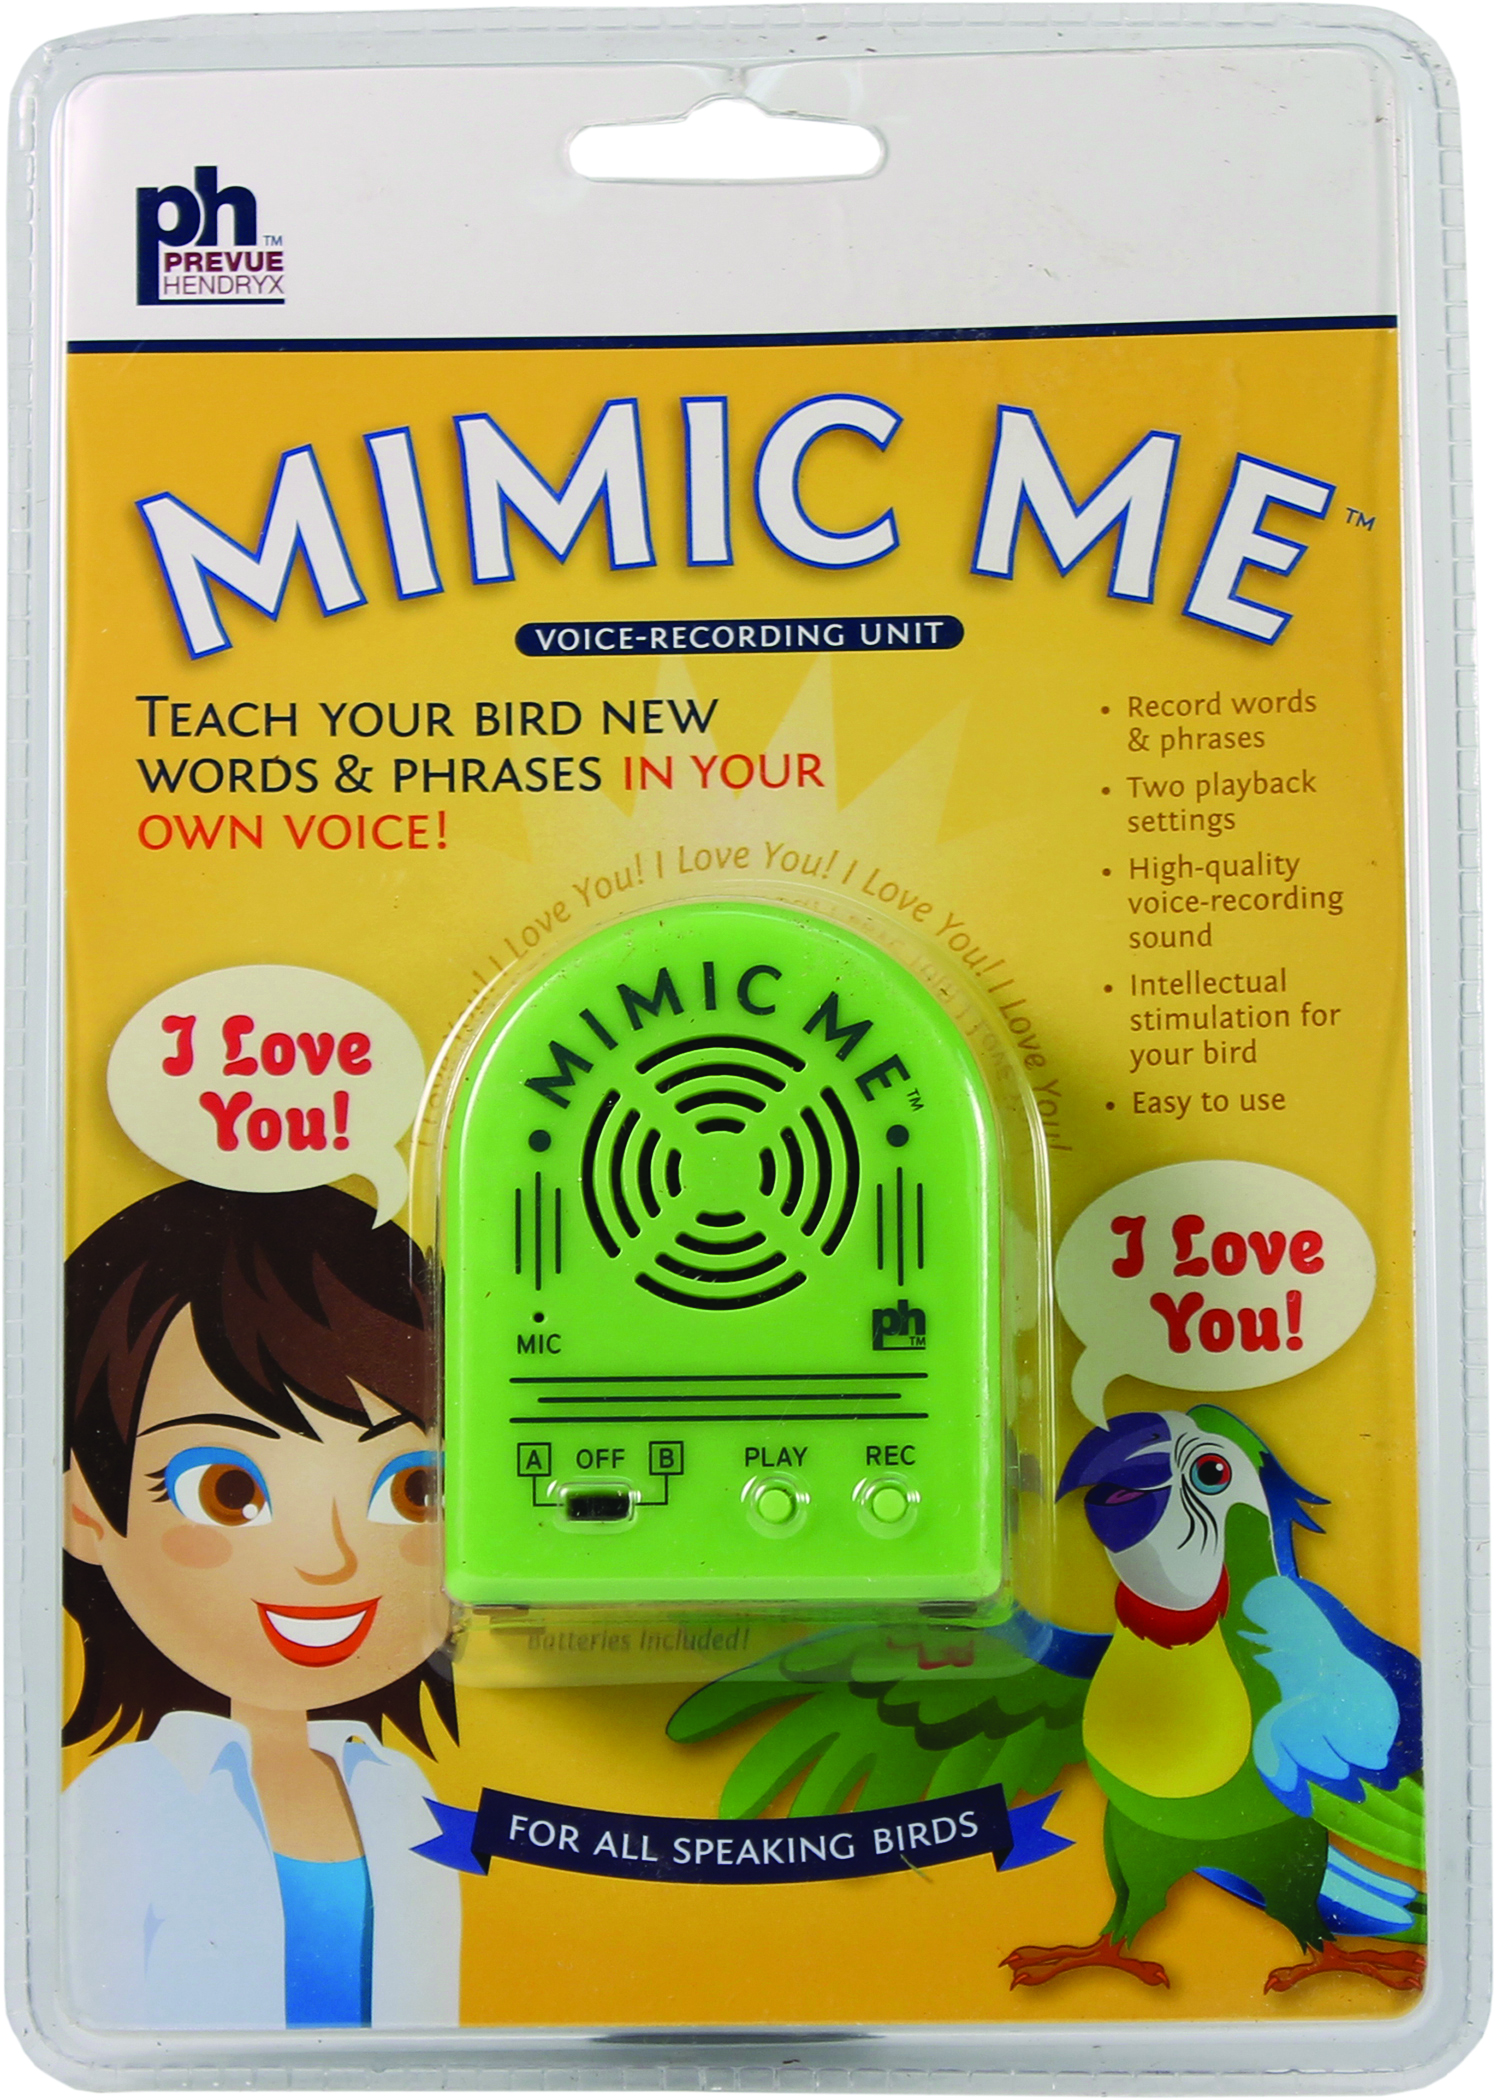 MIMIC ME VOICE-RECORDING UNIT